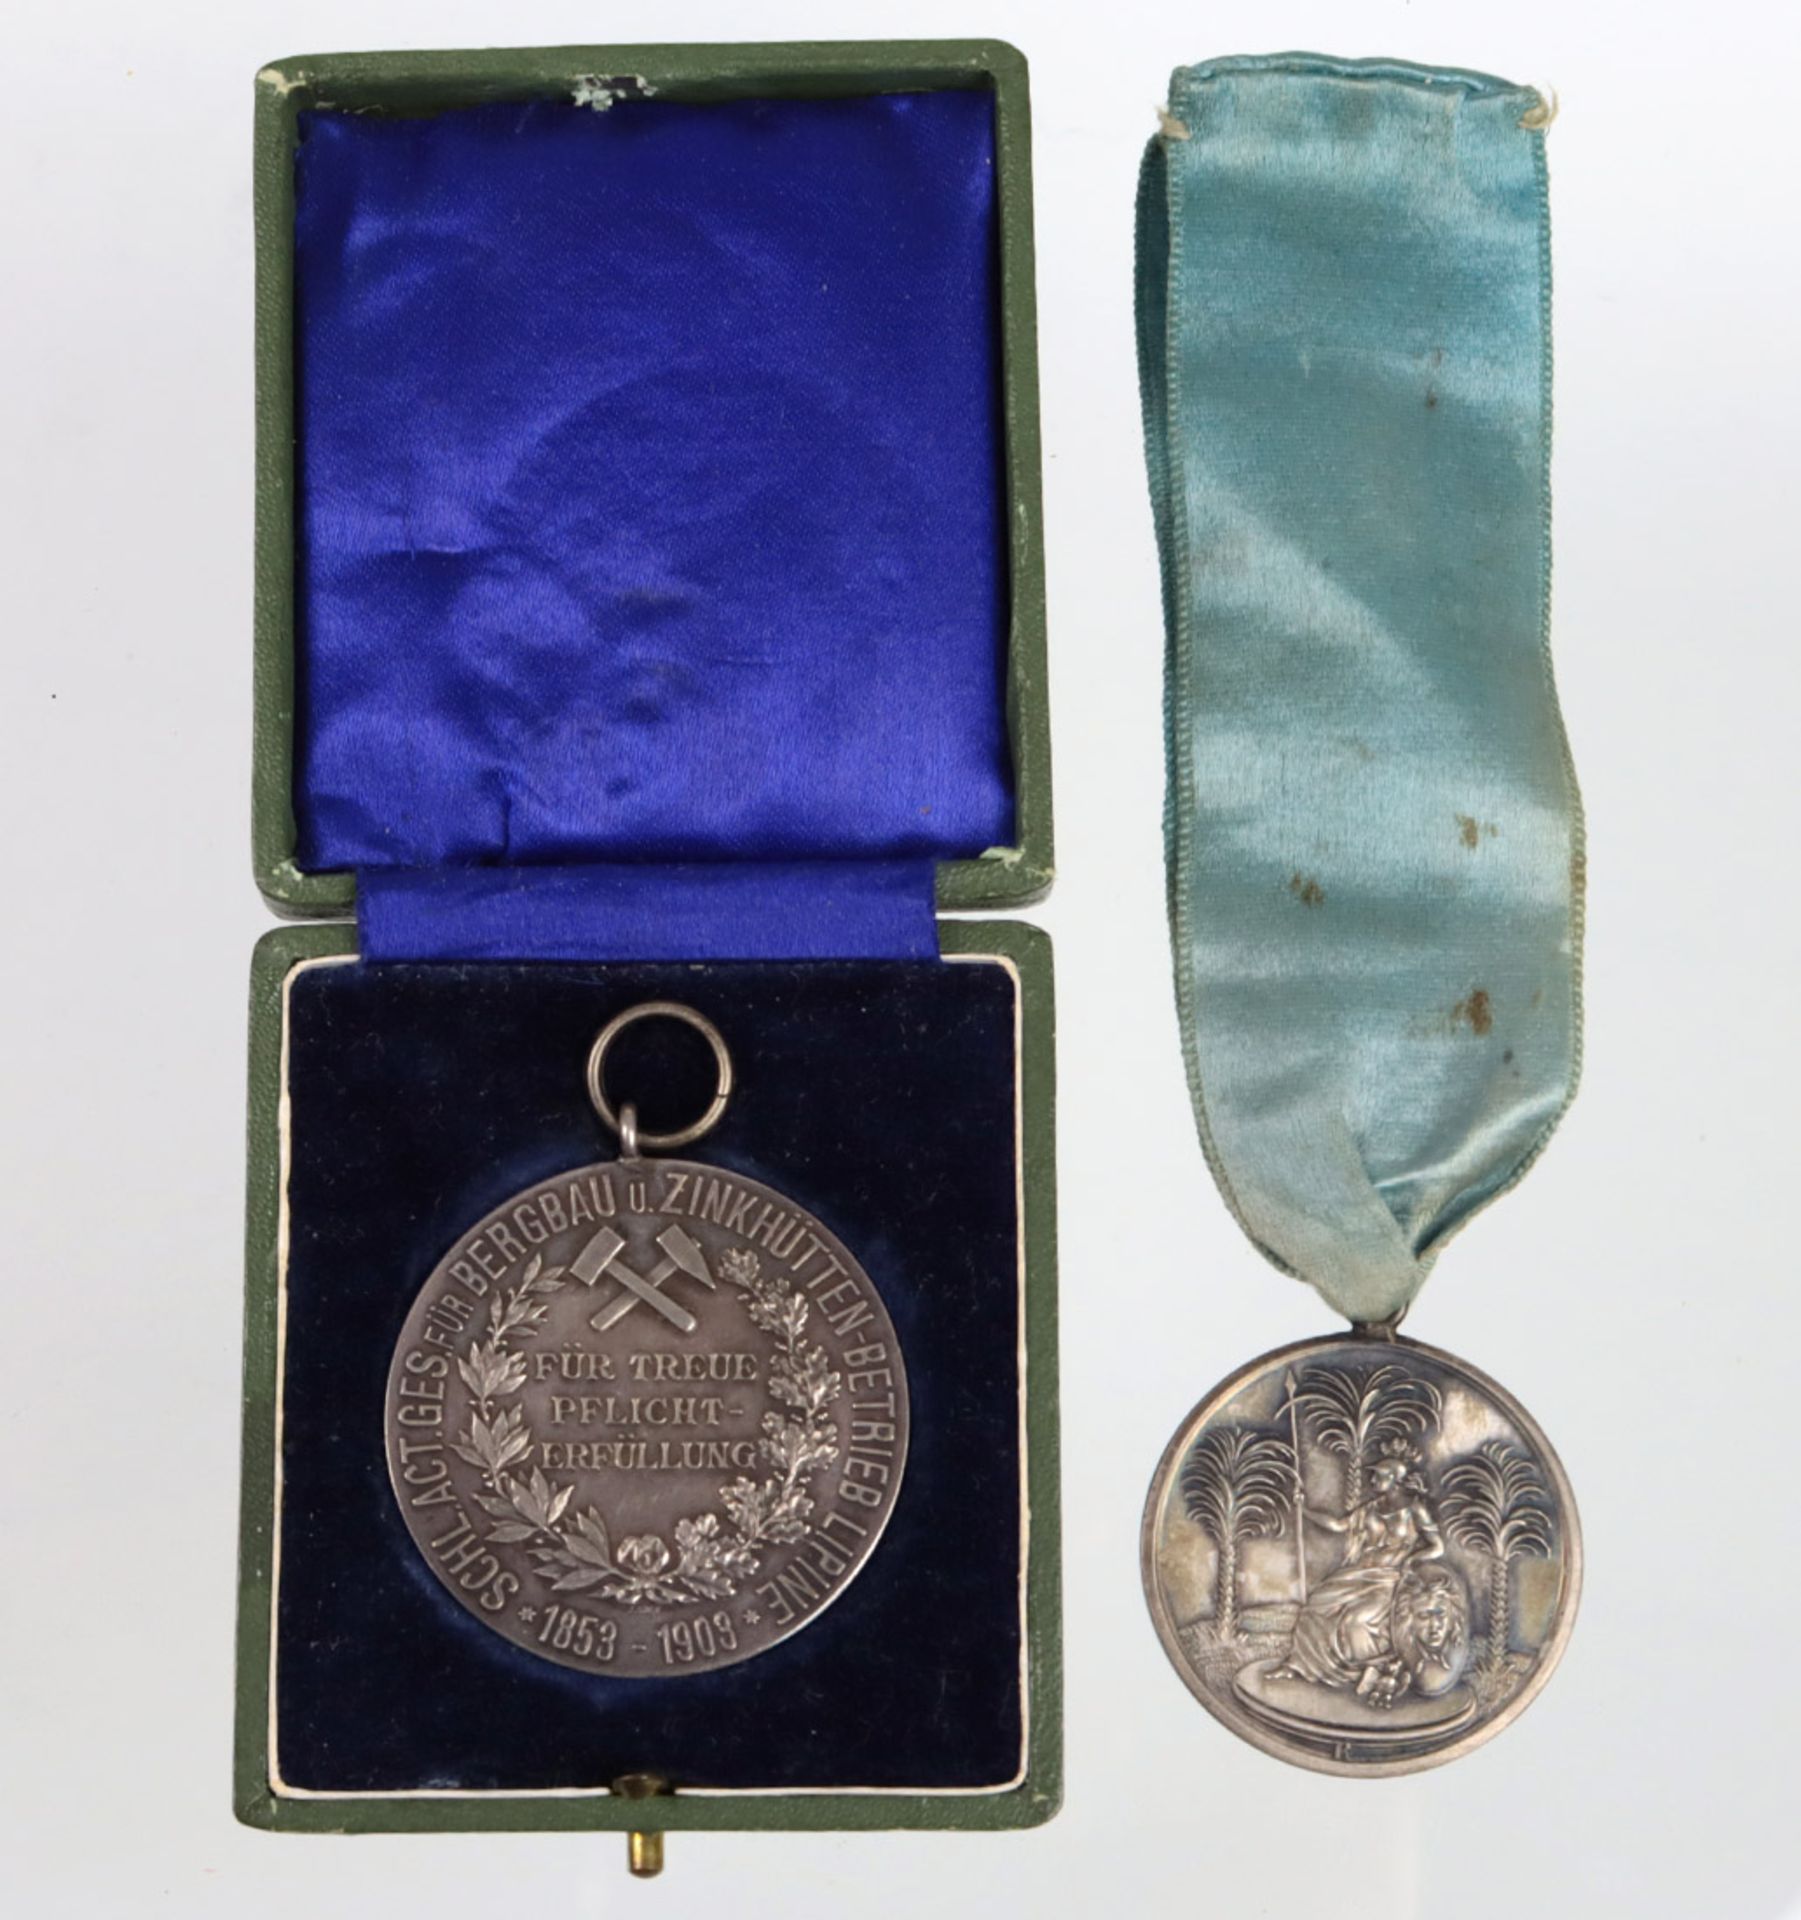 2 Silber Medaillen 1766 und 1903 dabei Freimaurer Silbermedaille 1766 (geprägt 1774)